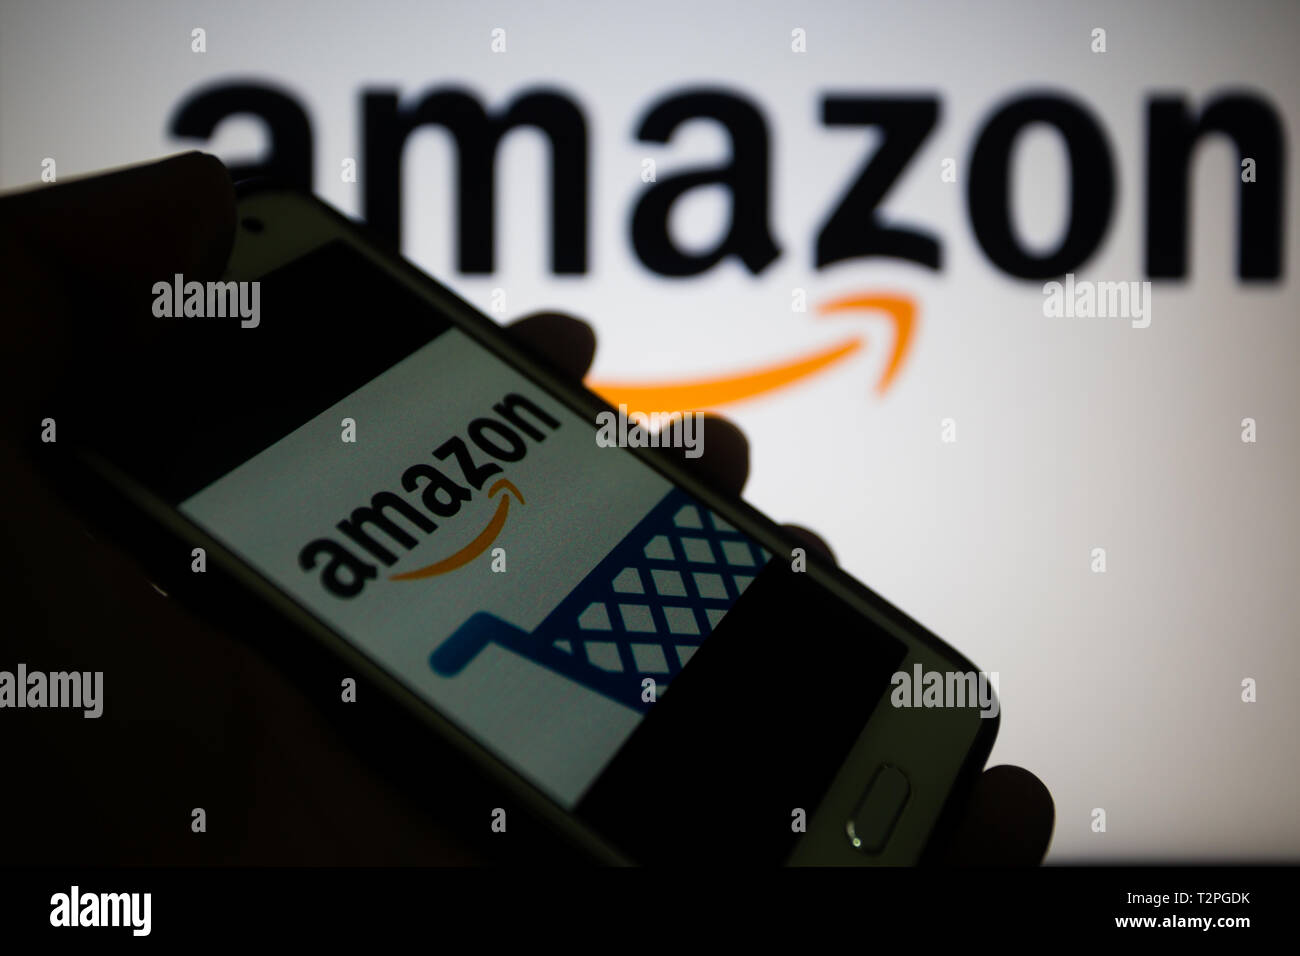 Amazon.com, amerikanischen multinationalen Technologie Unternehmen, das sich auf e-commerce, Logo wird auf dem Smartphone angezeigt, Logo unscharf im Hintergrund konzentriert sich Stockfoto